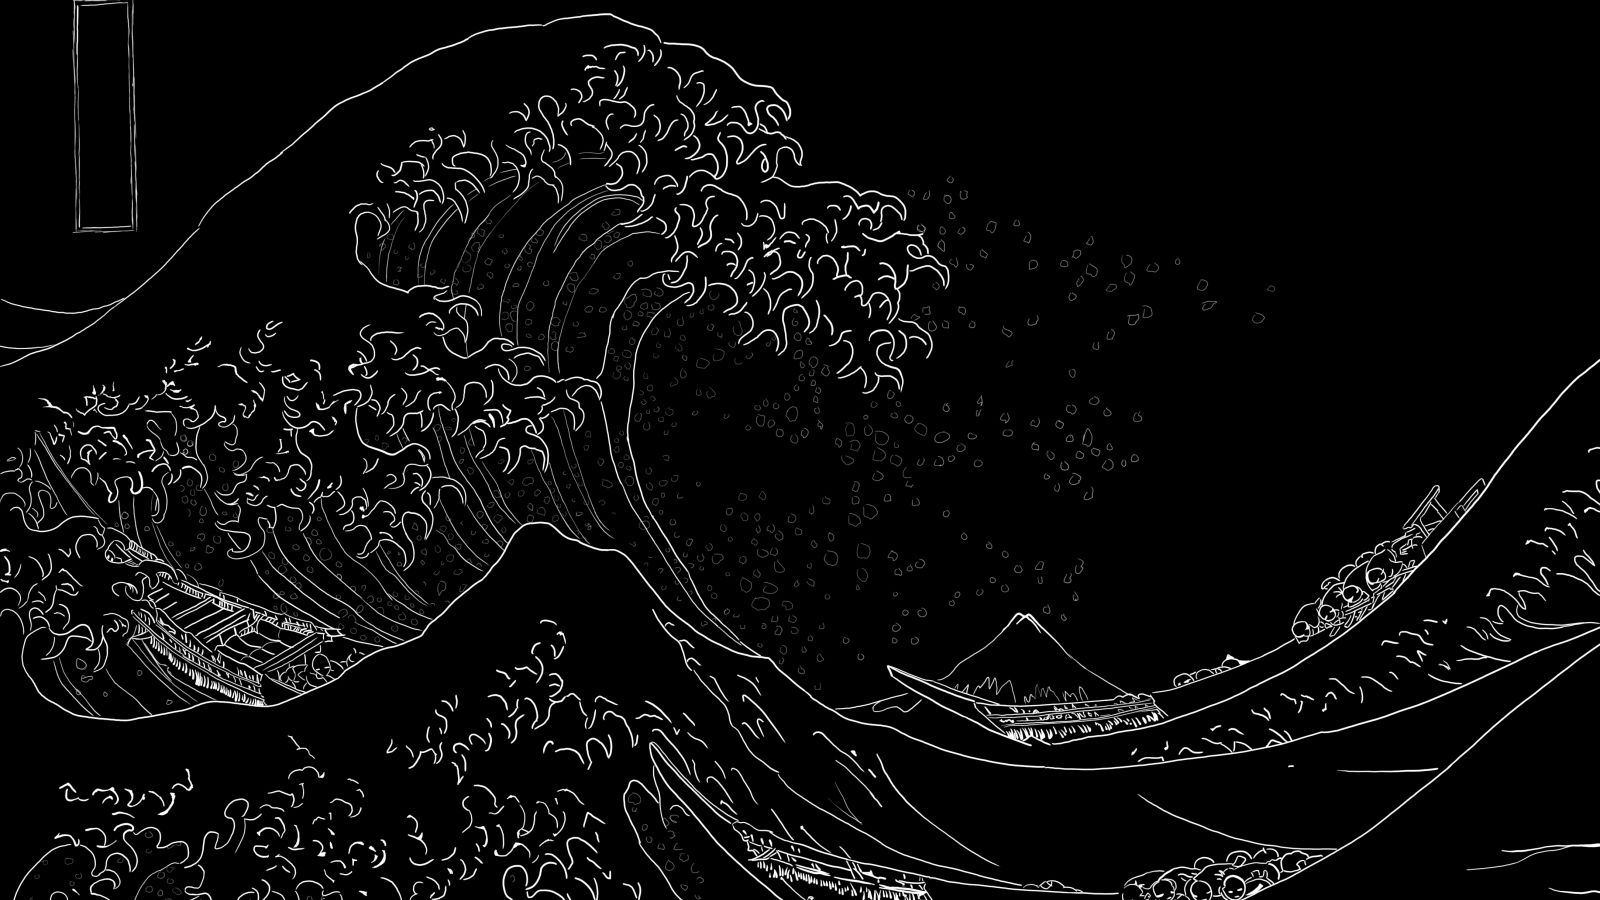 Free download japan paintings waves boats kanagawa great wave